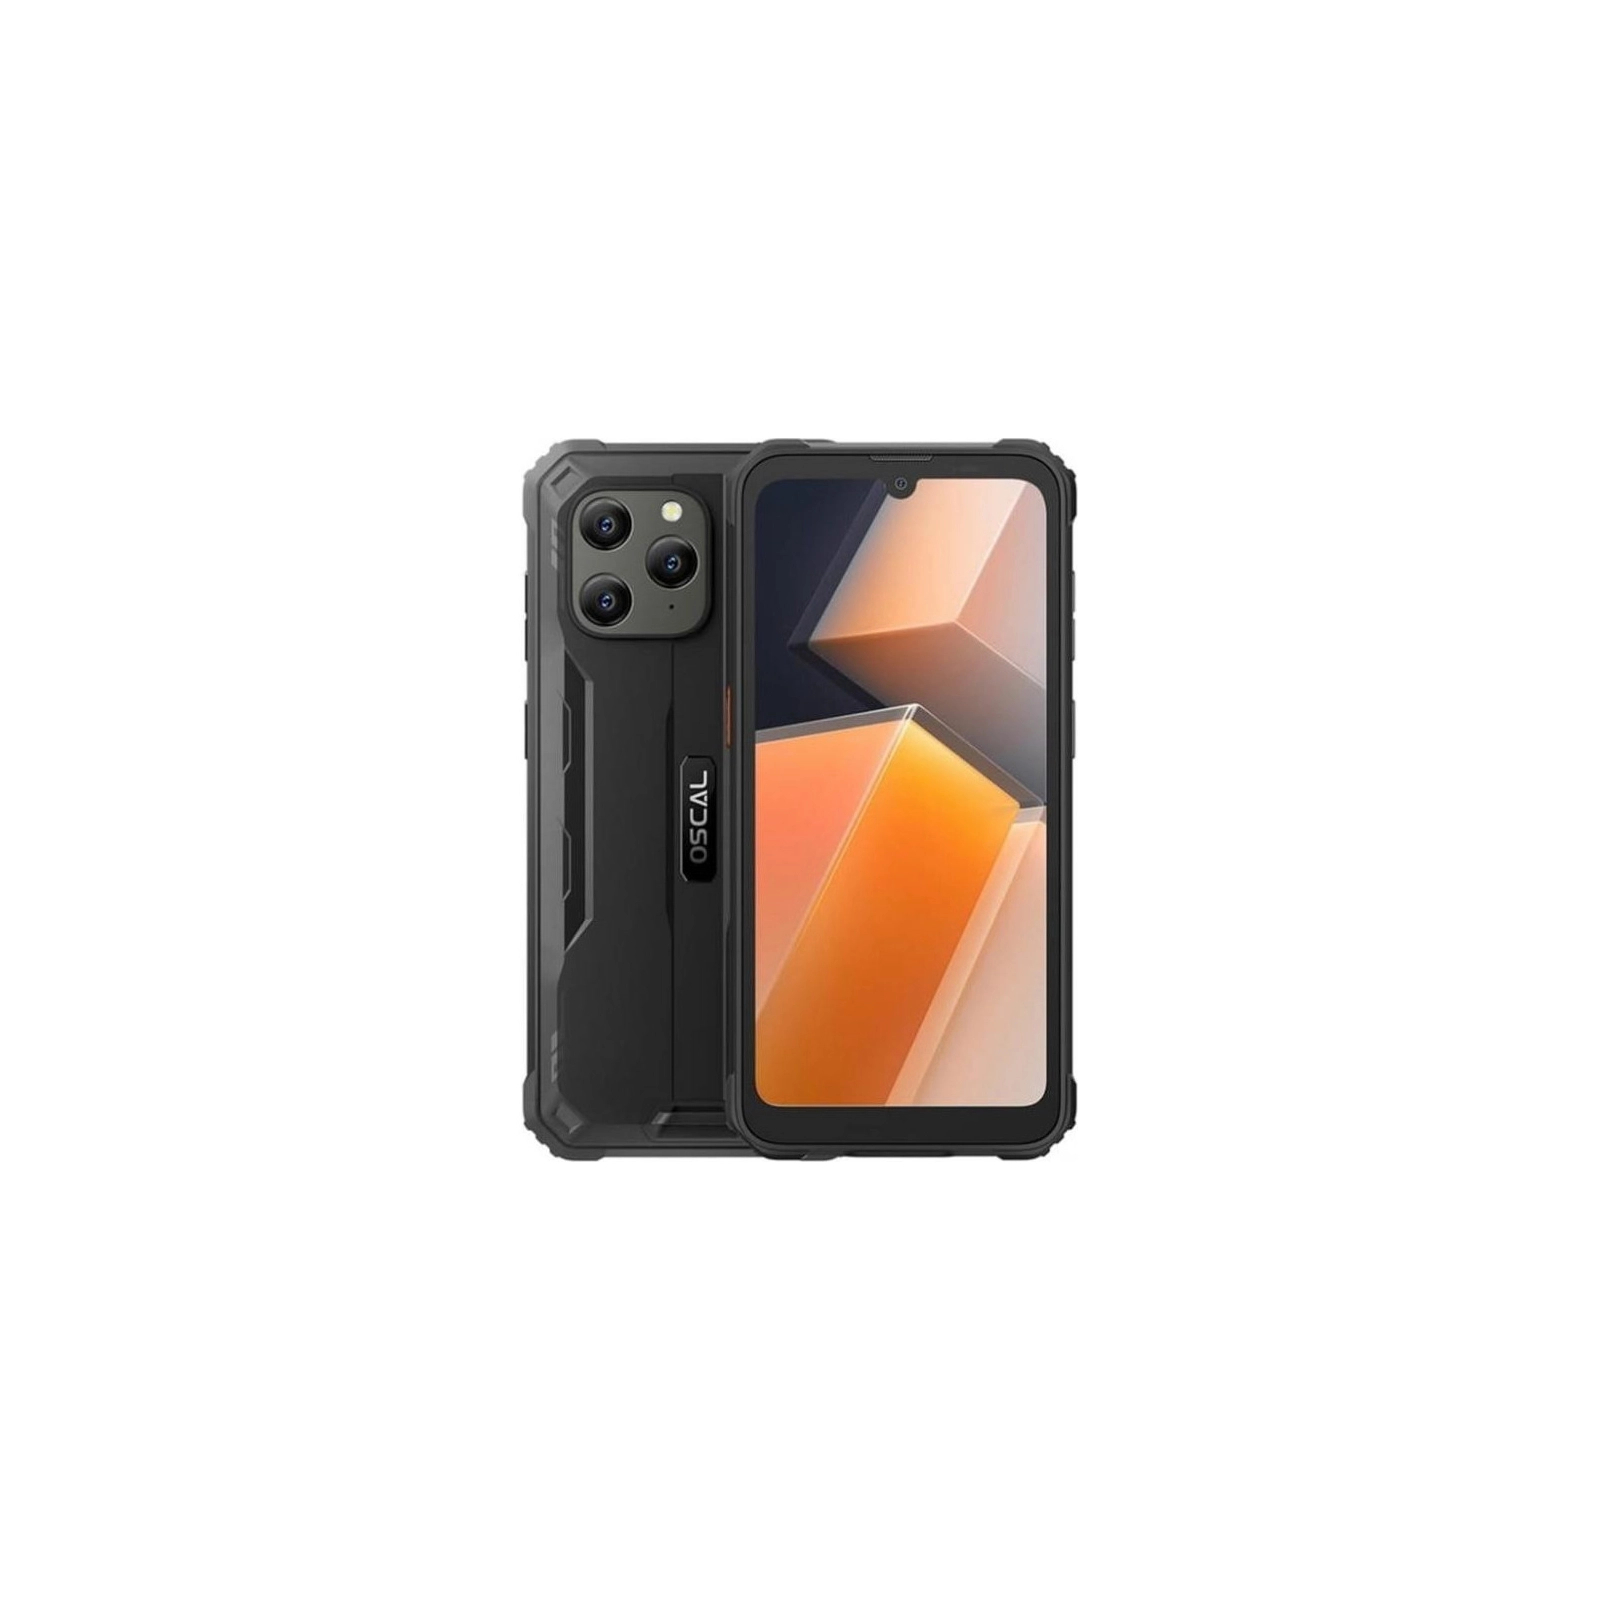 Мобильный телефон Oscal S70 Pro 4/64GB Orange